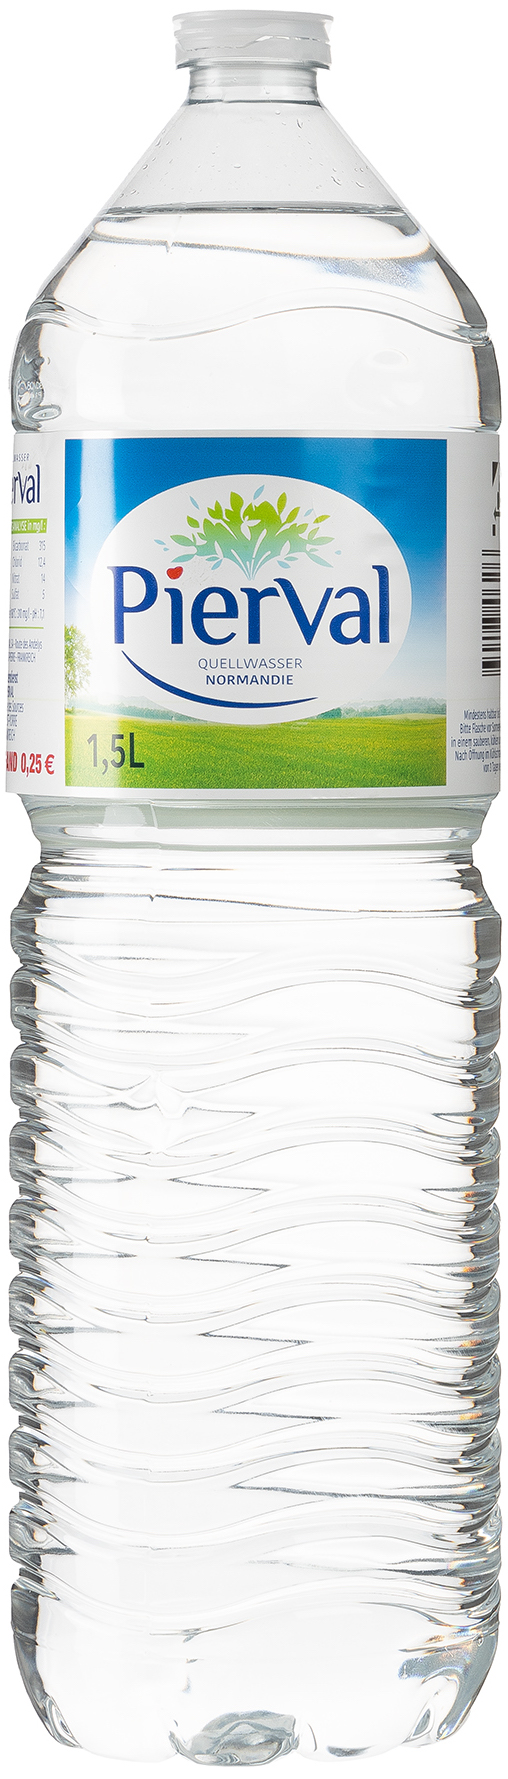 Pierval französisches Quellwasser 1,5L EINWEG